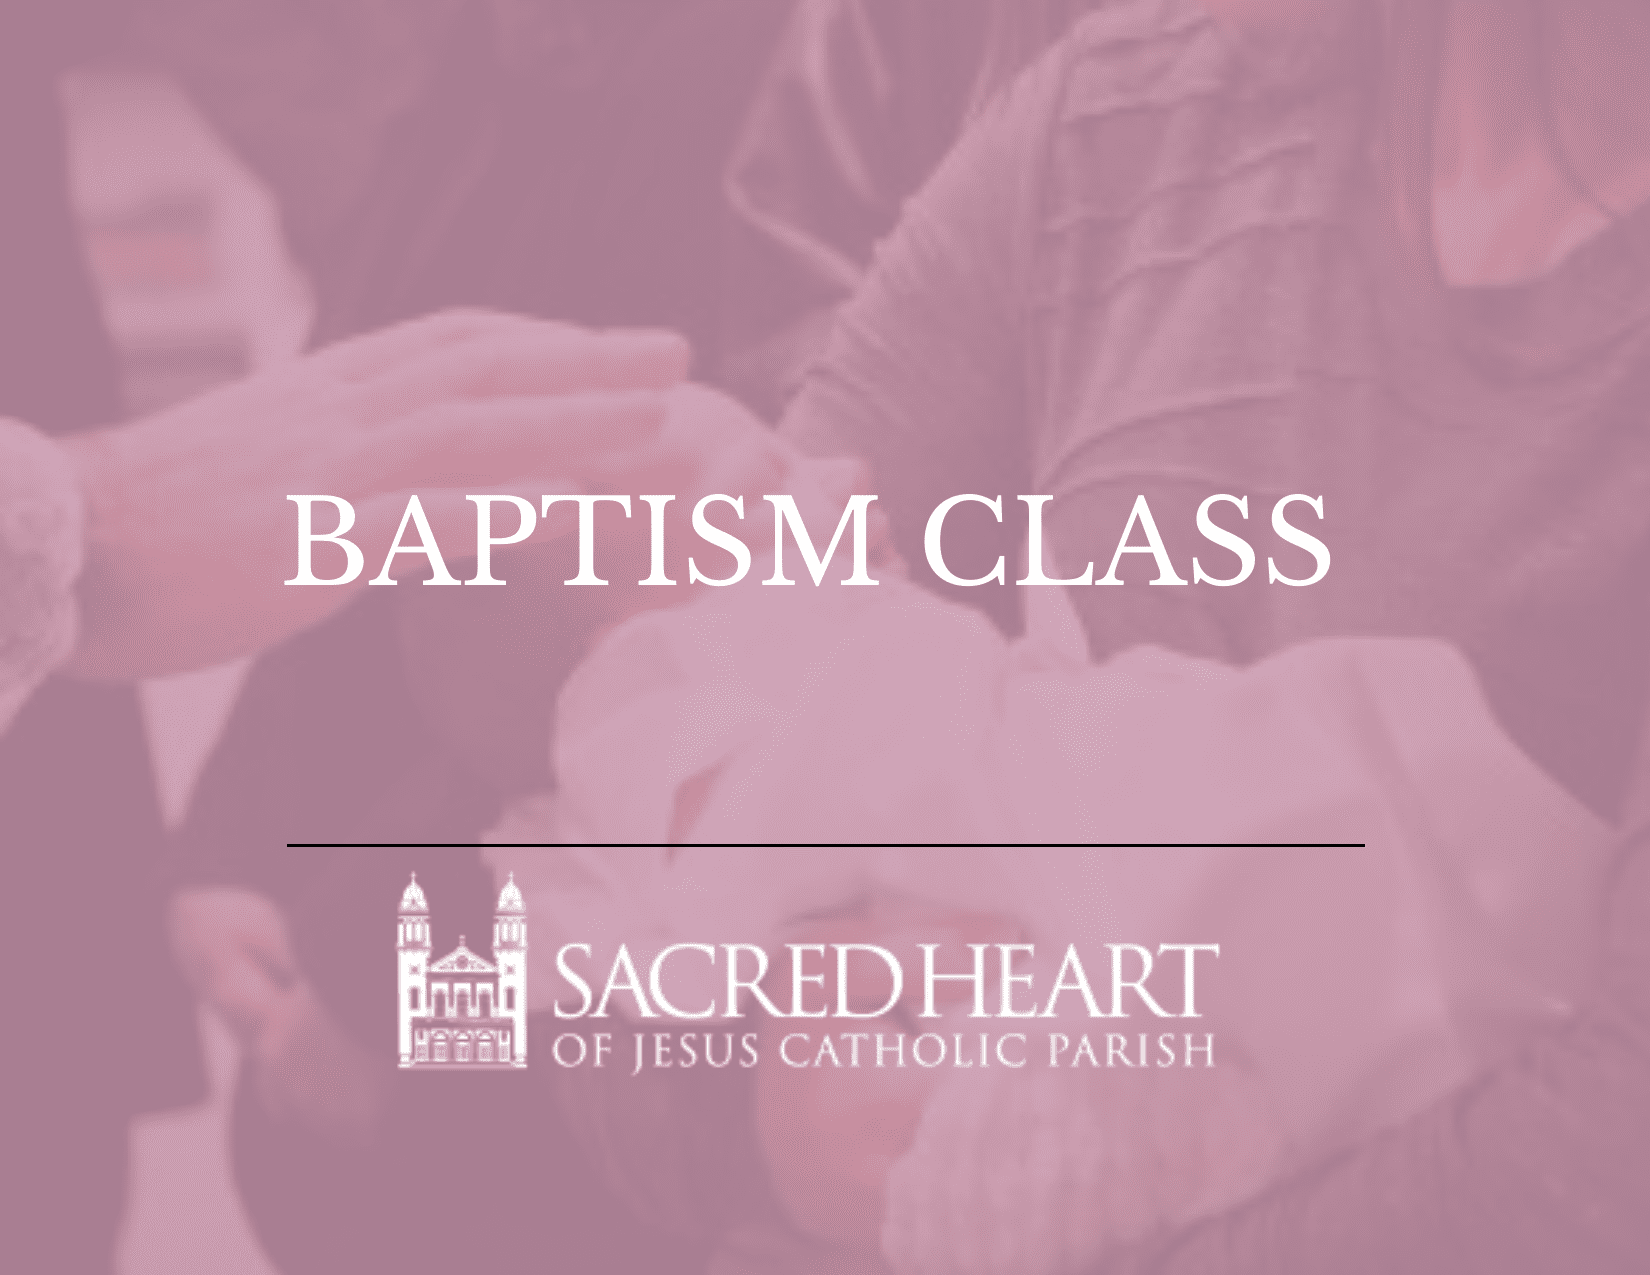 Next Baptism Class is September 22